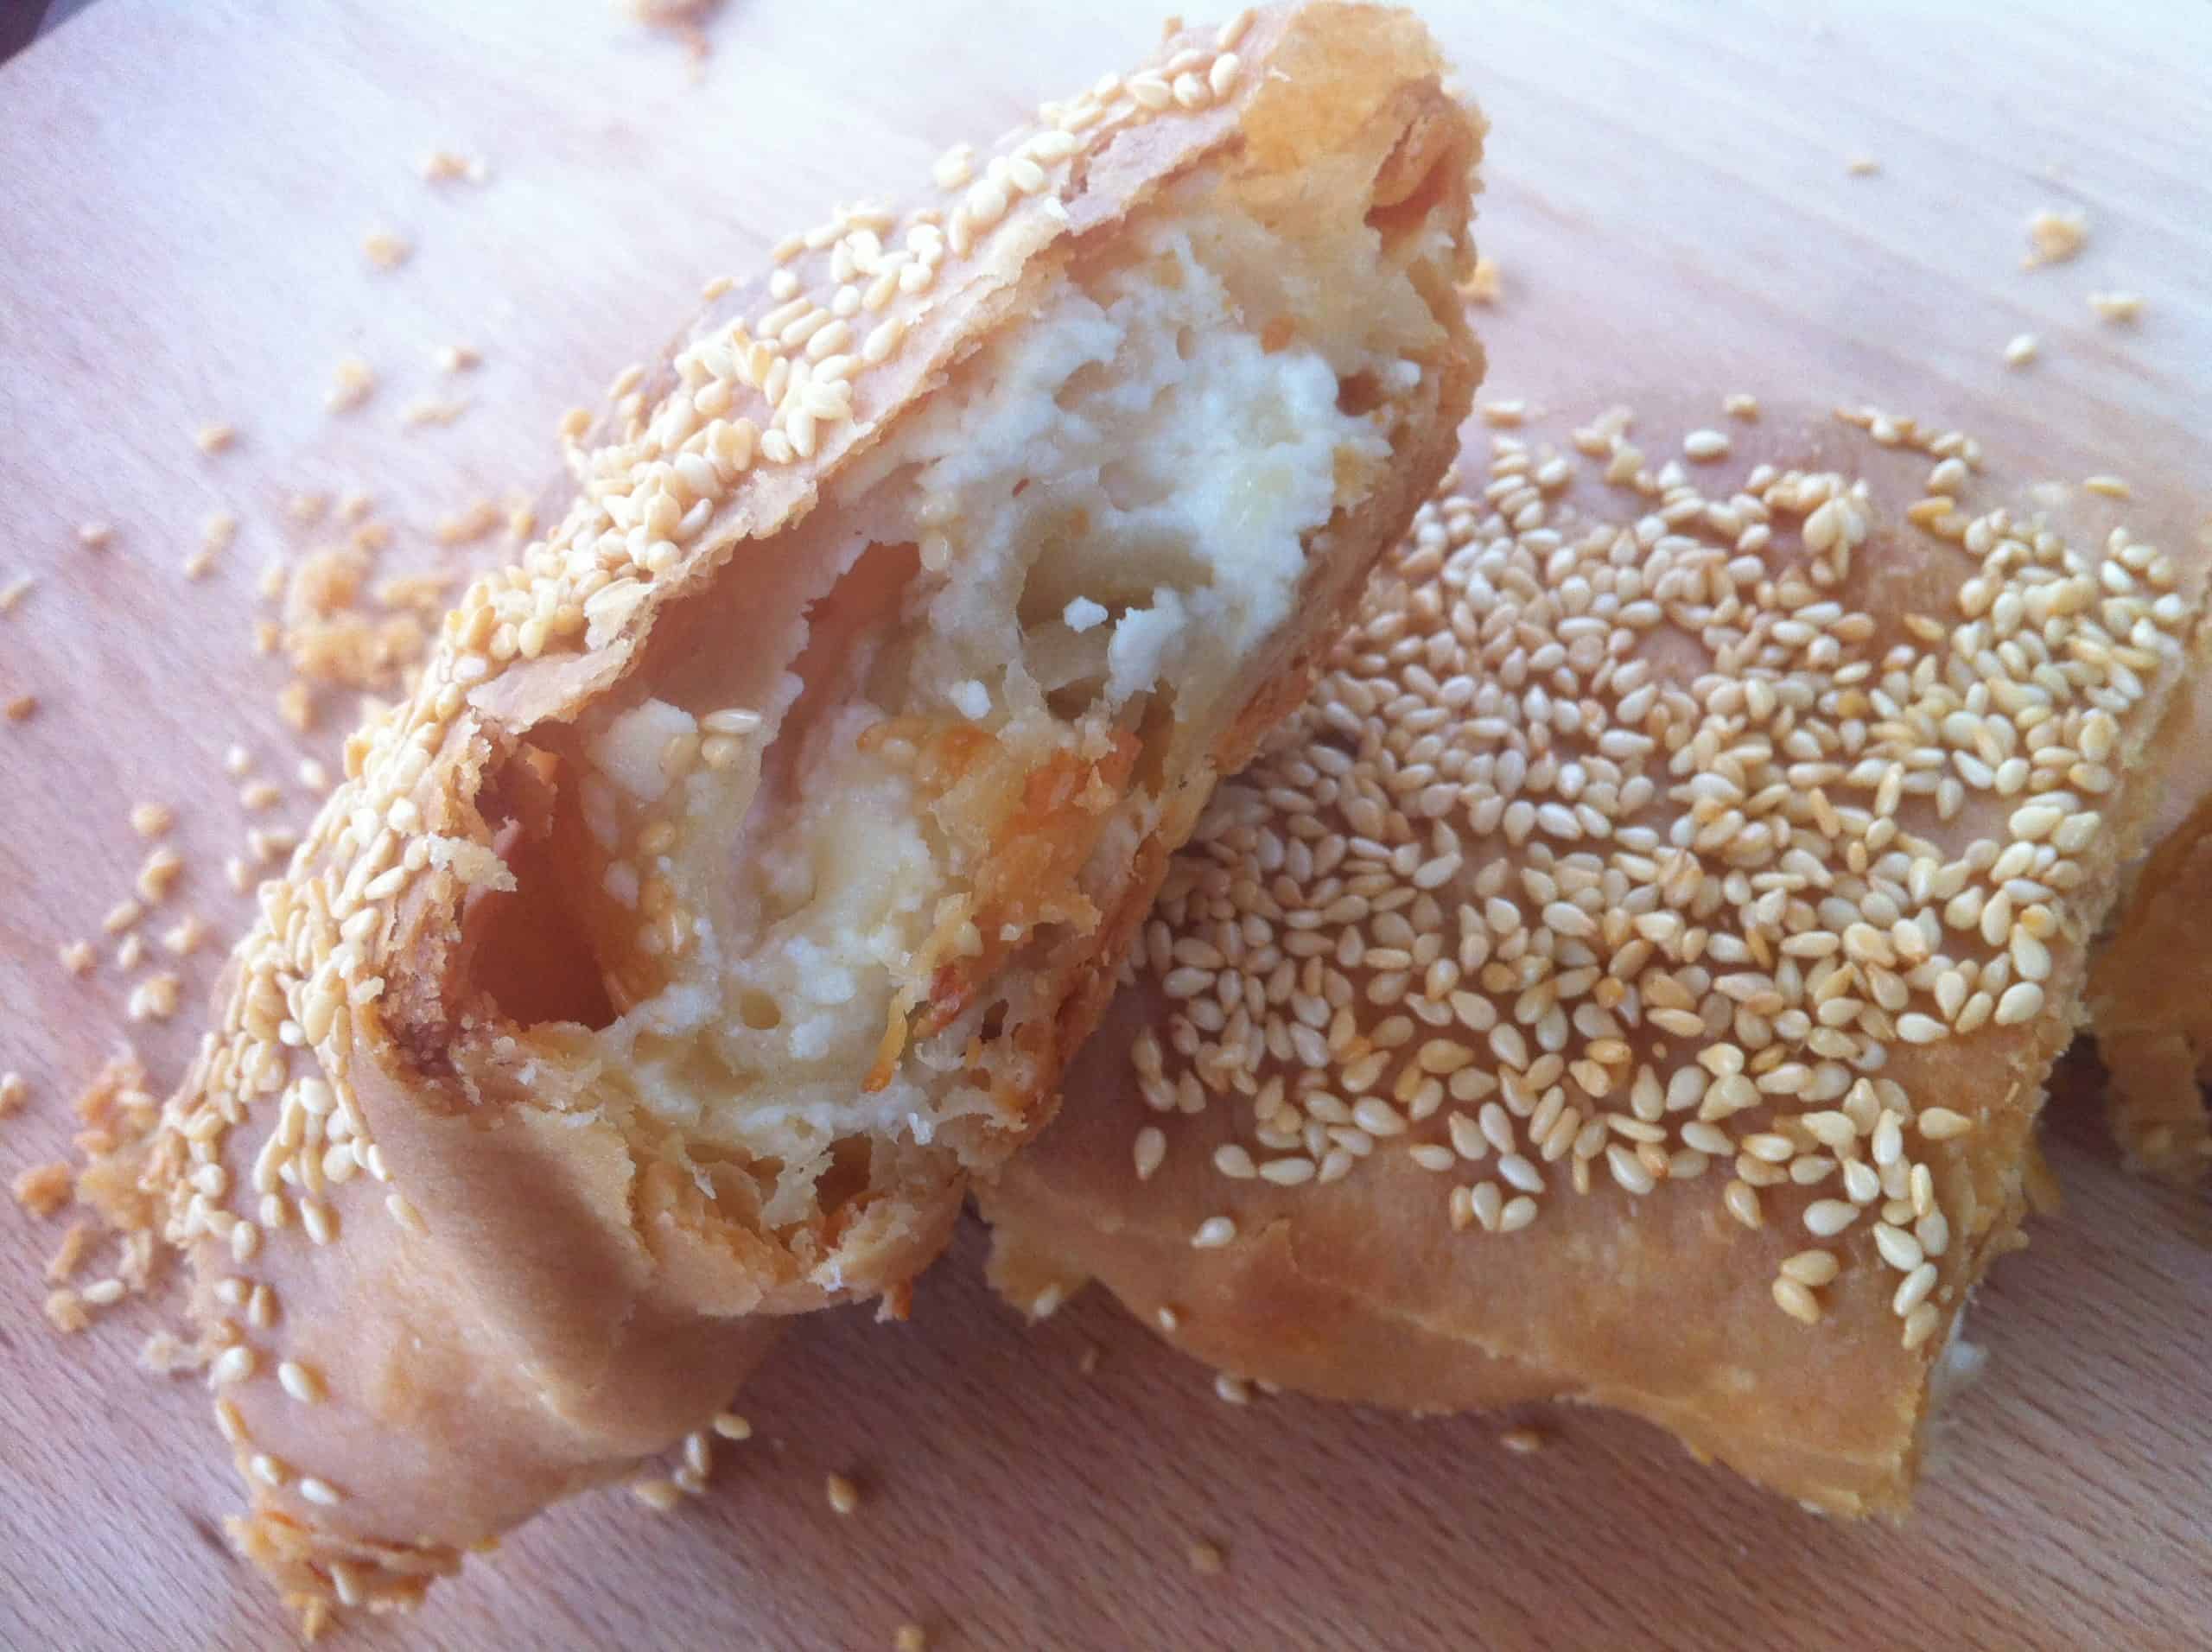 https://www.mygreekdish.com/wp-content/uploads/2013/10/Tiropita-Strifti-Feta-Cheese-Pie-with-Homemade-Phyllo2-scaled.jpg